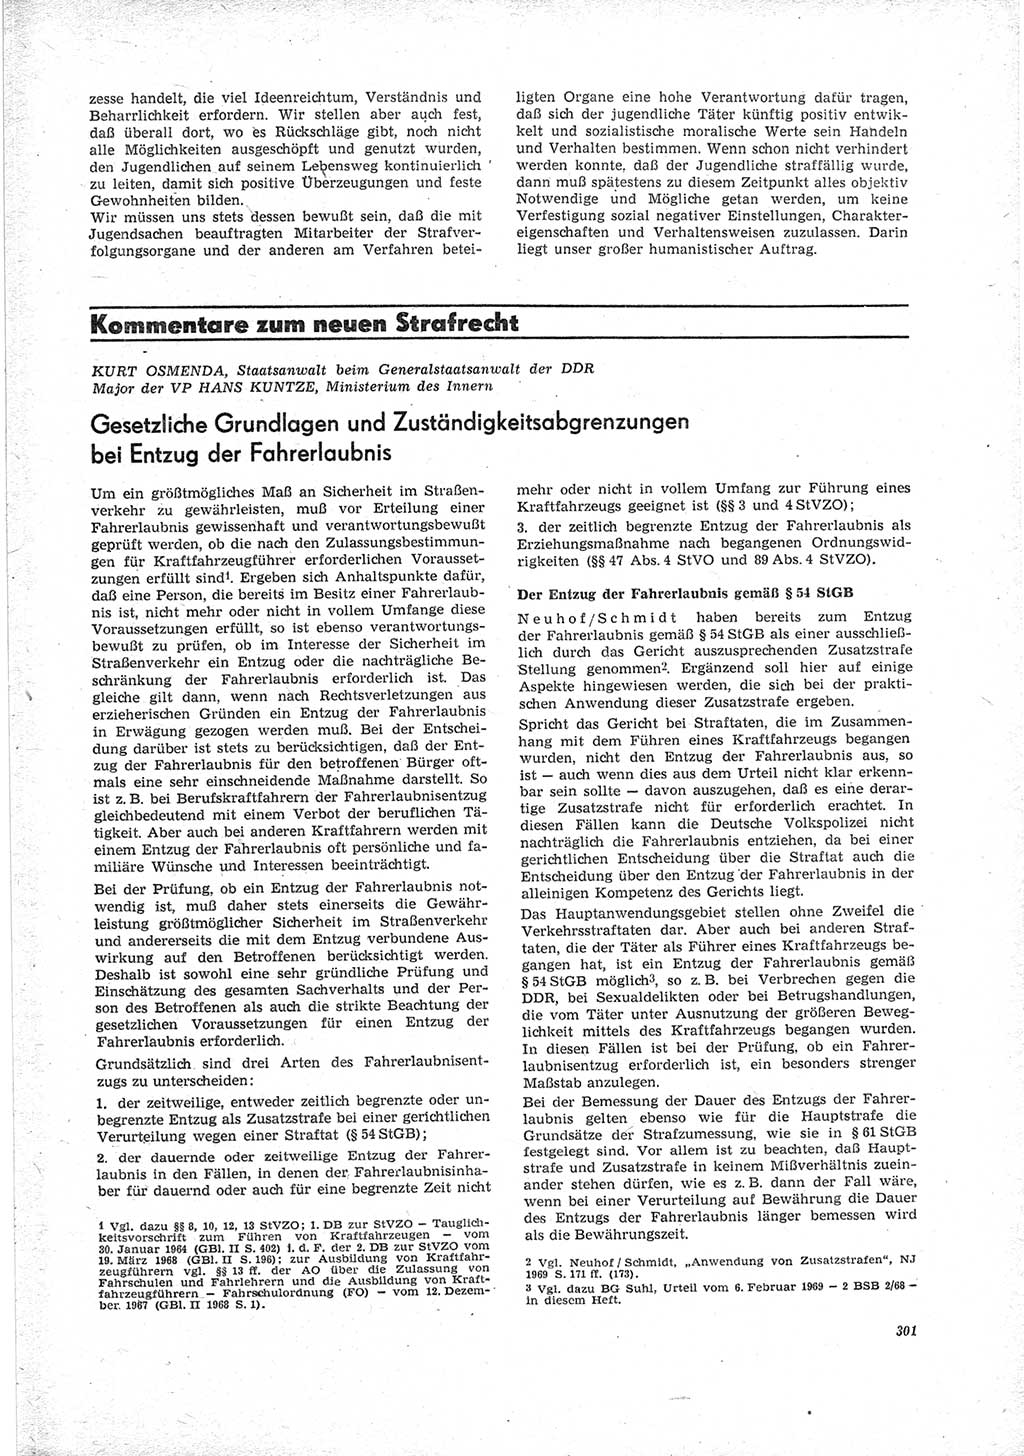 Neue Justiz (NJ), Zeitschrift für Recht und Rechtswissenschaft [Deutsche Demokratische Republik (DDR)], 23. Jahrgang 1969, Seite 301 (NJ DDR 1969, S. 301)